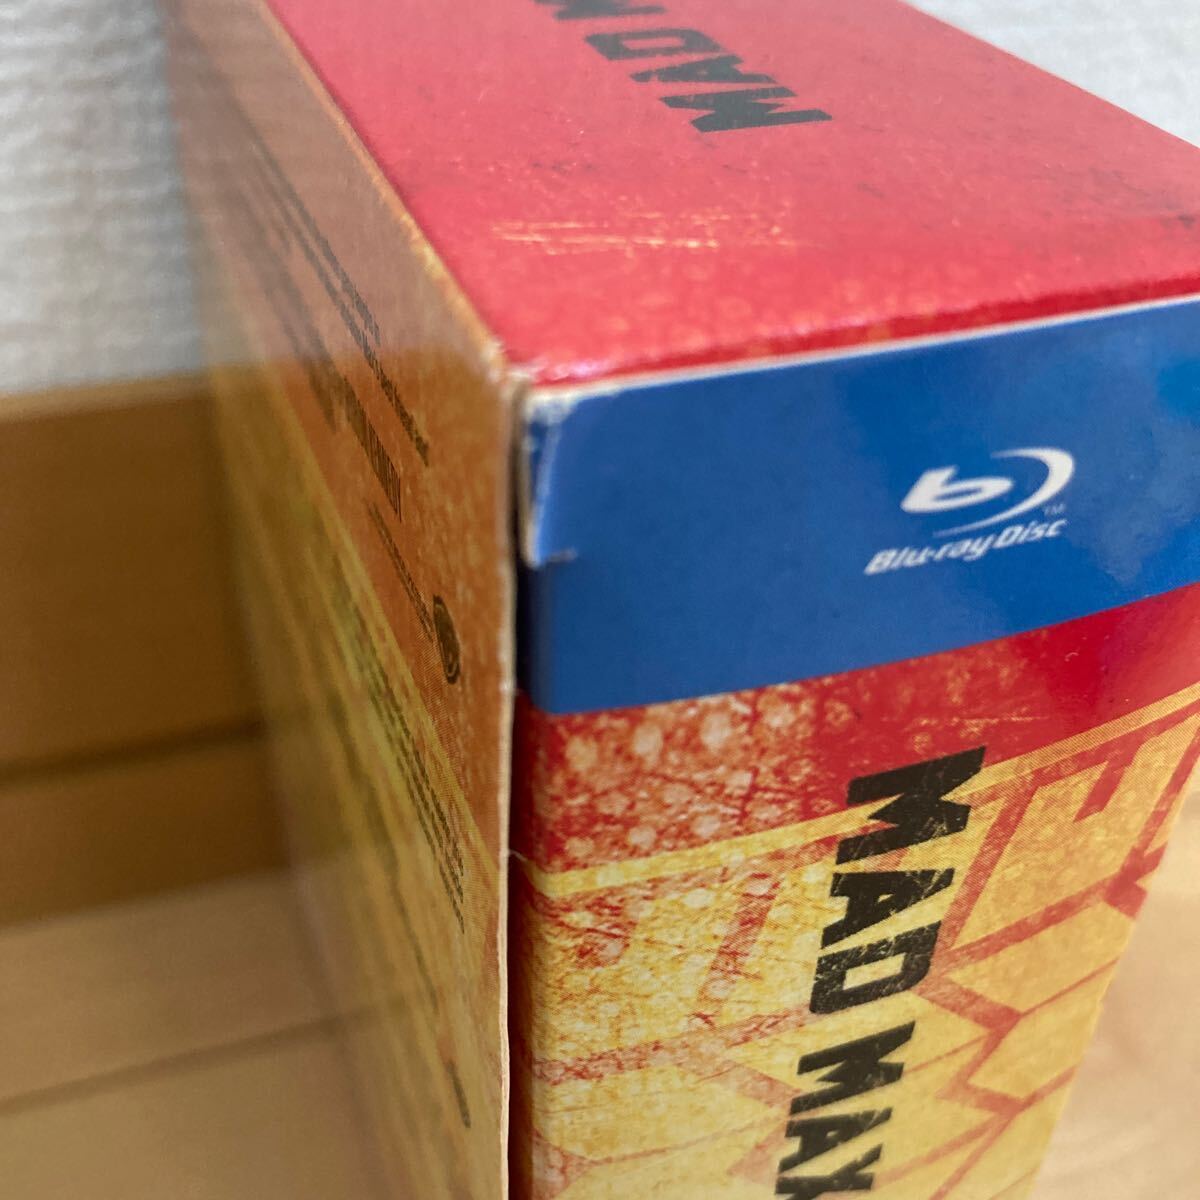 マッドマックス コレクションBlu-ray BOX & マッドマックス 怒りのデスロード 3D Blu-rayセット★シリーズ最新作公開★_若干の破れがあります